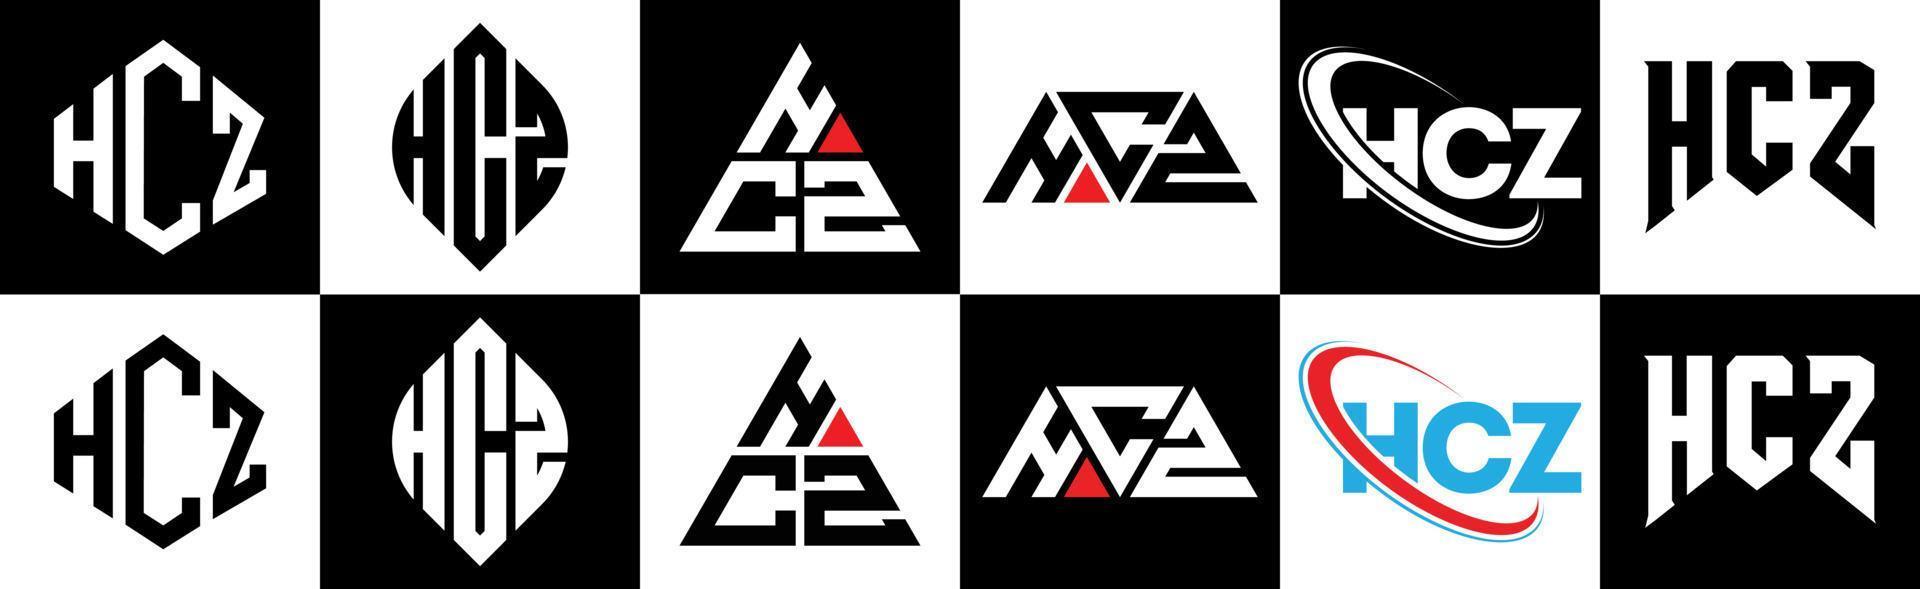 création de logo de lettre hcz en six styles. hcz polygone, cercle, triangle, hexagone, style plat et simple avec logo de lettre de variation de couleur noir et blanc dans un plan de travail. hcz logo minimaliste et classique vecteur